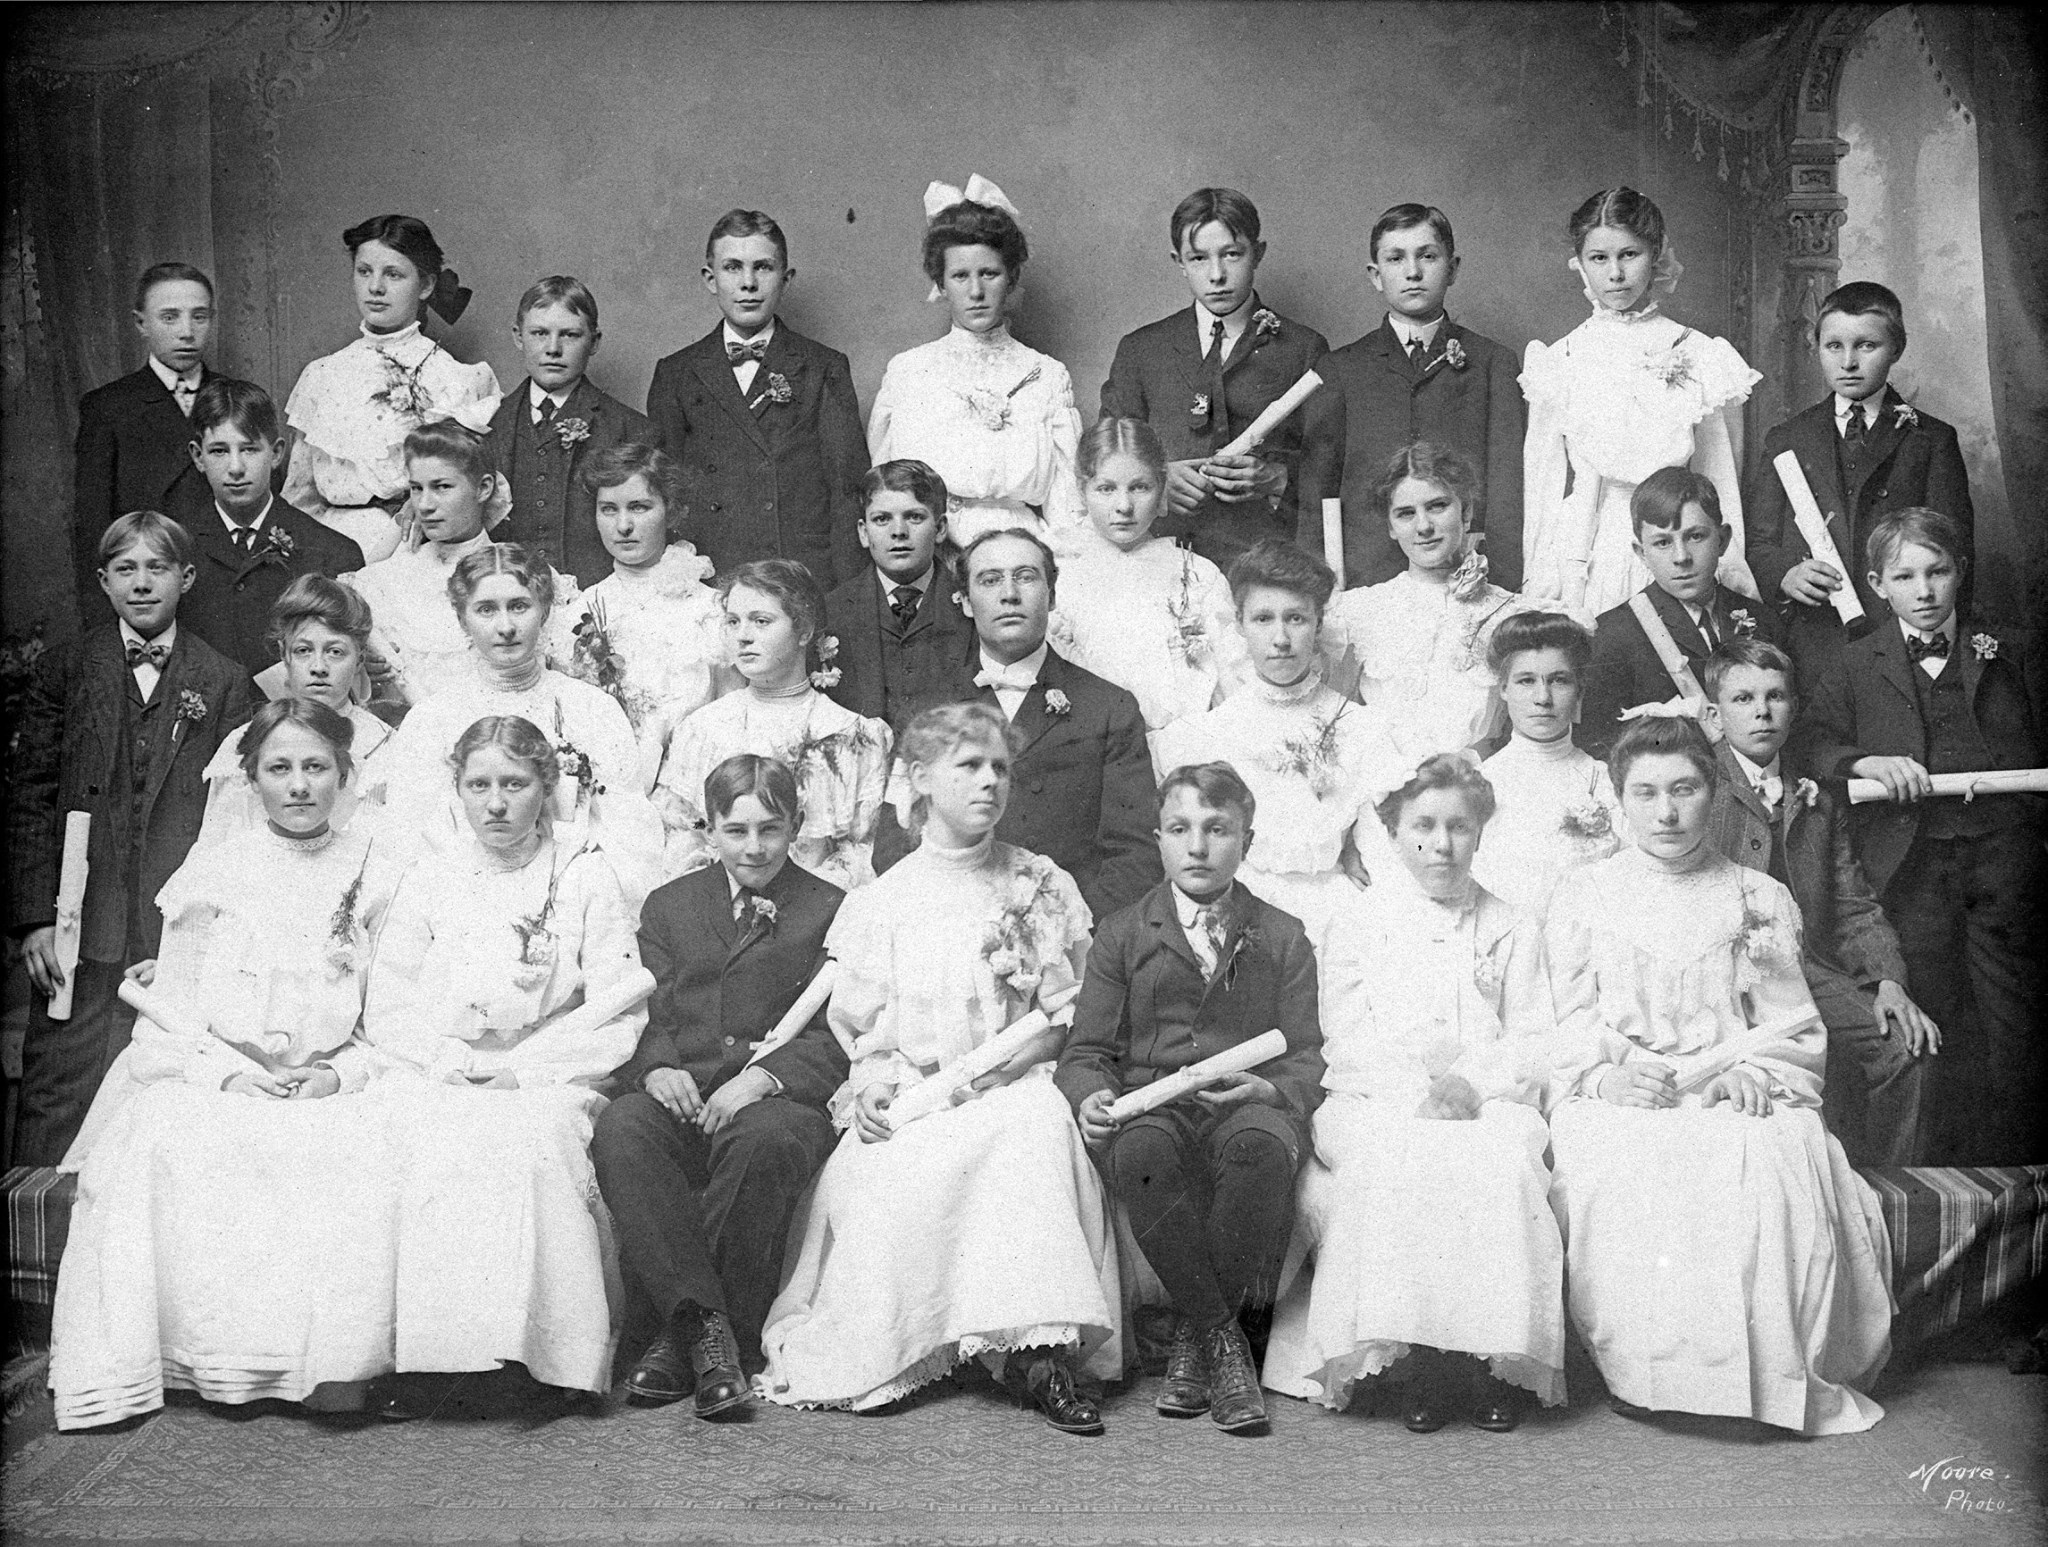 1903 Confirmation Class Ebenezer Congregational Church Source: Steven Schreiber.